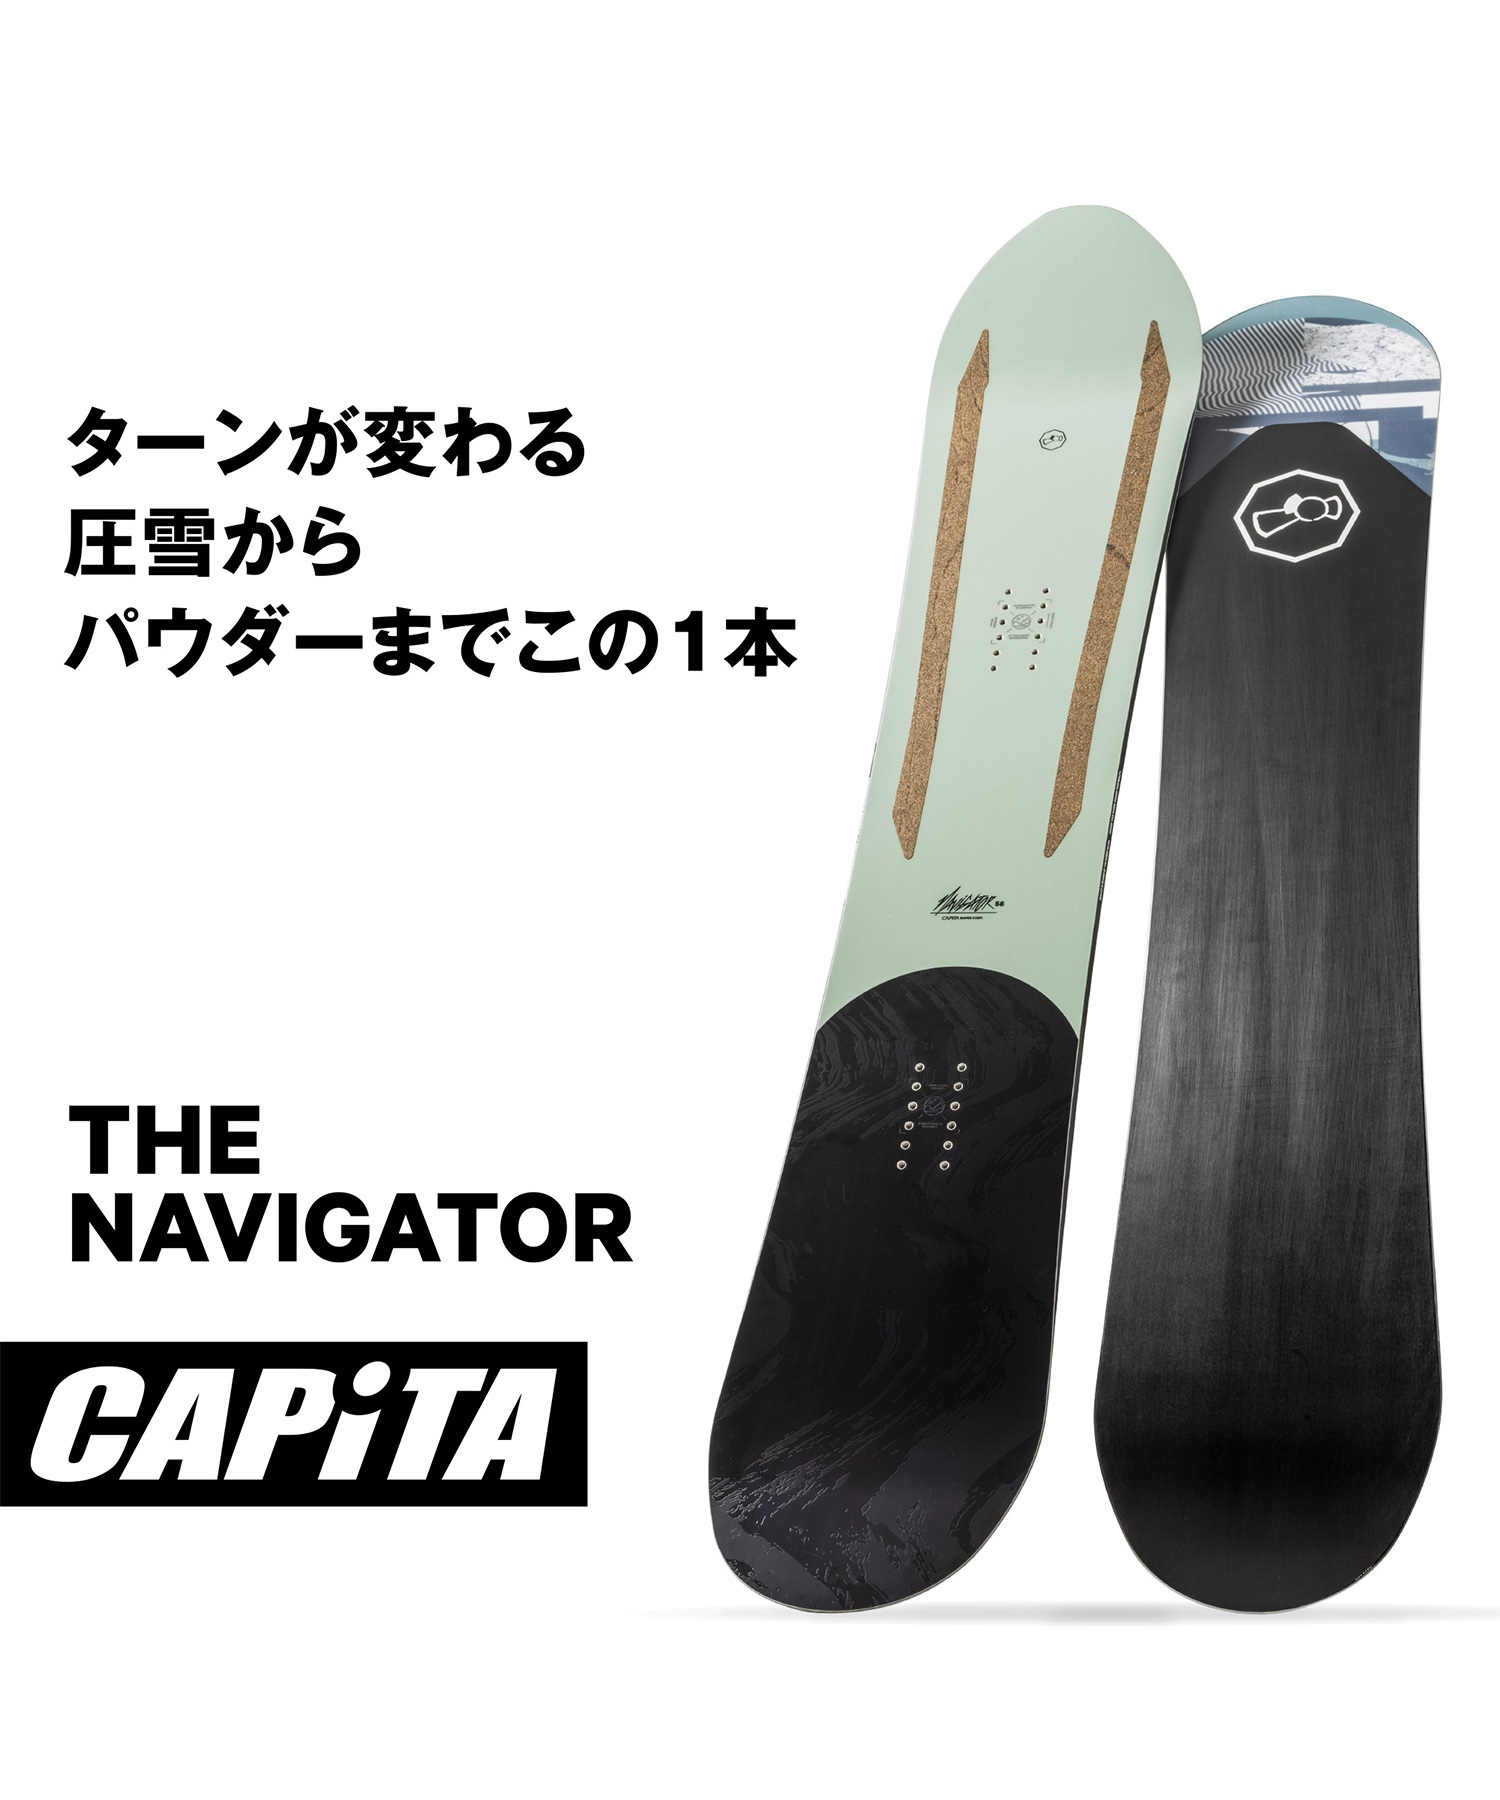 capita navigater キャピタ ナビゲーター パウダーボード - ボード